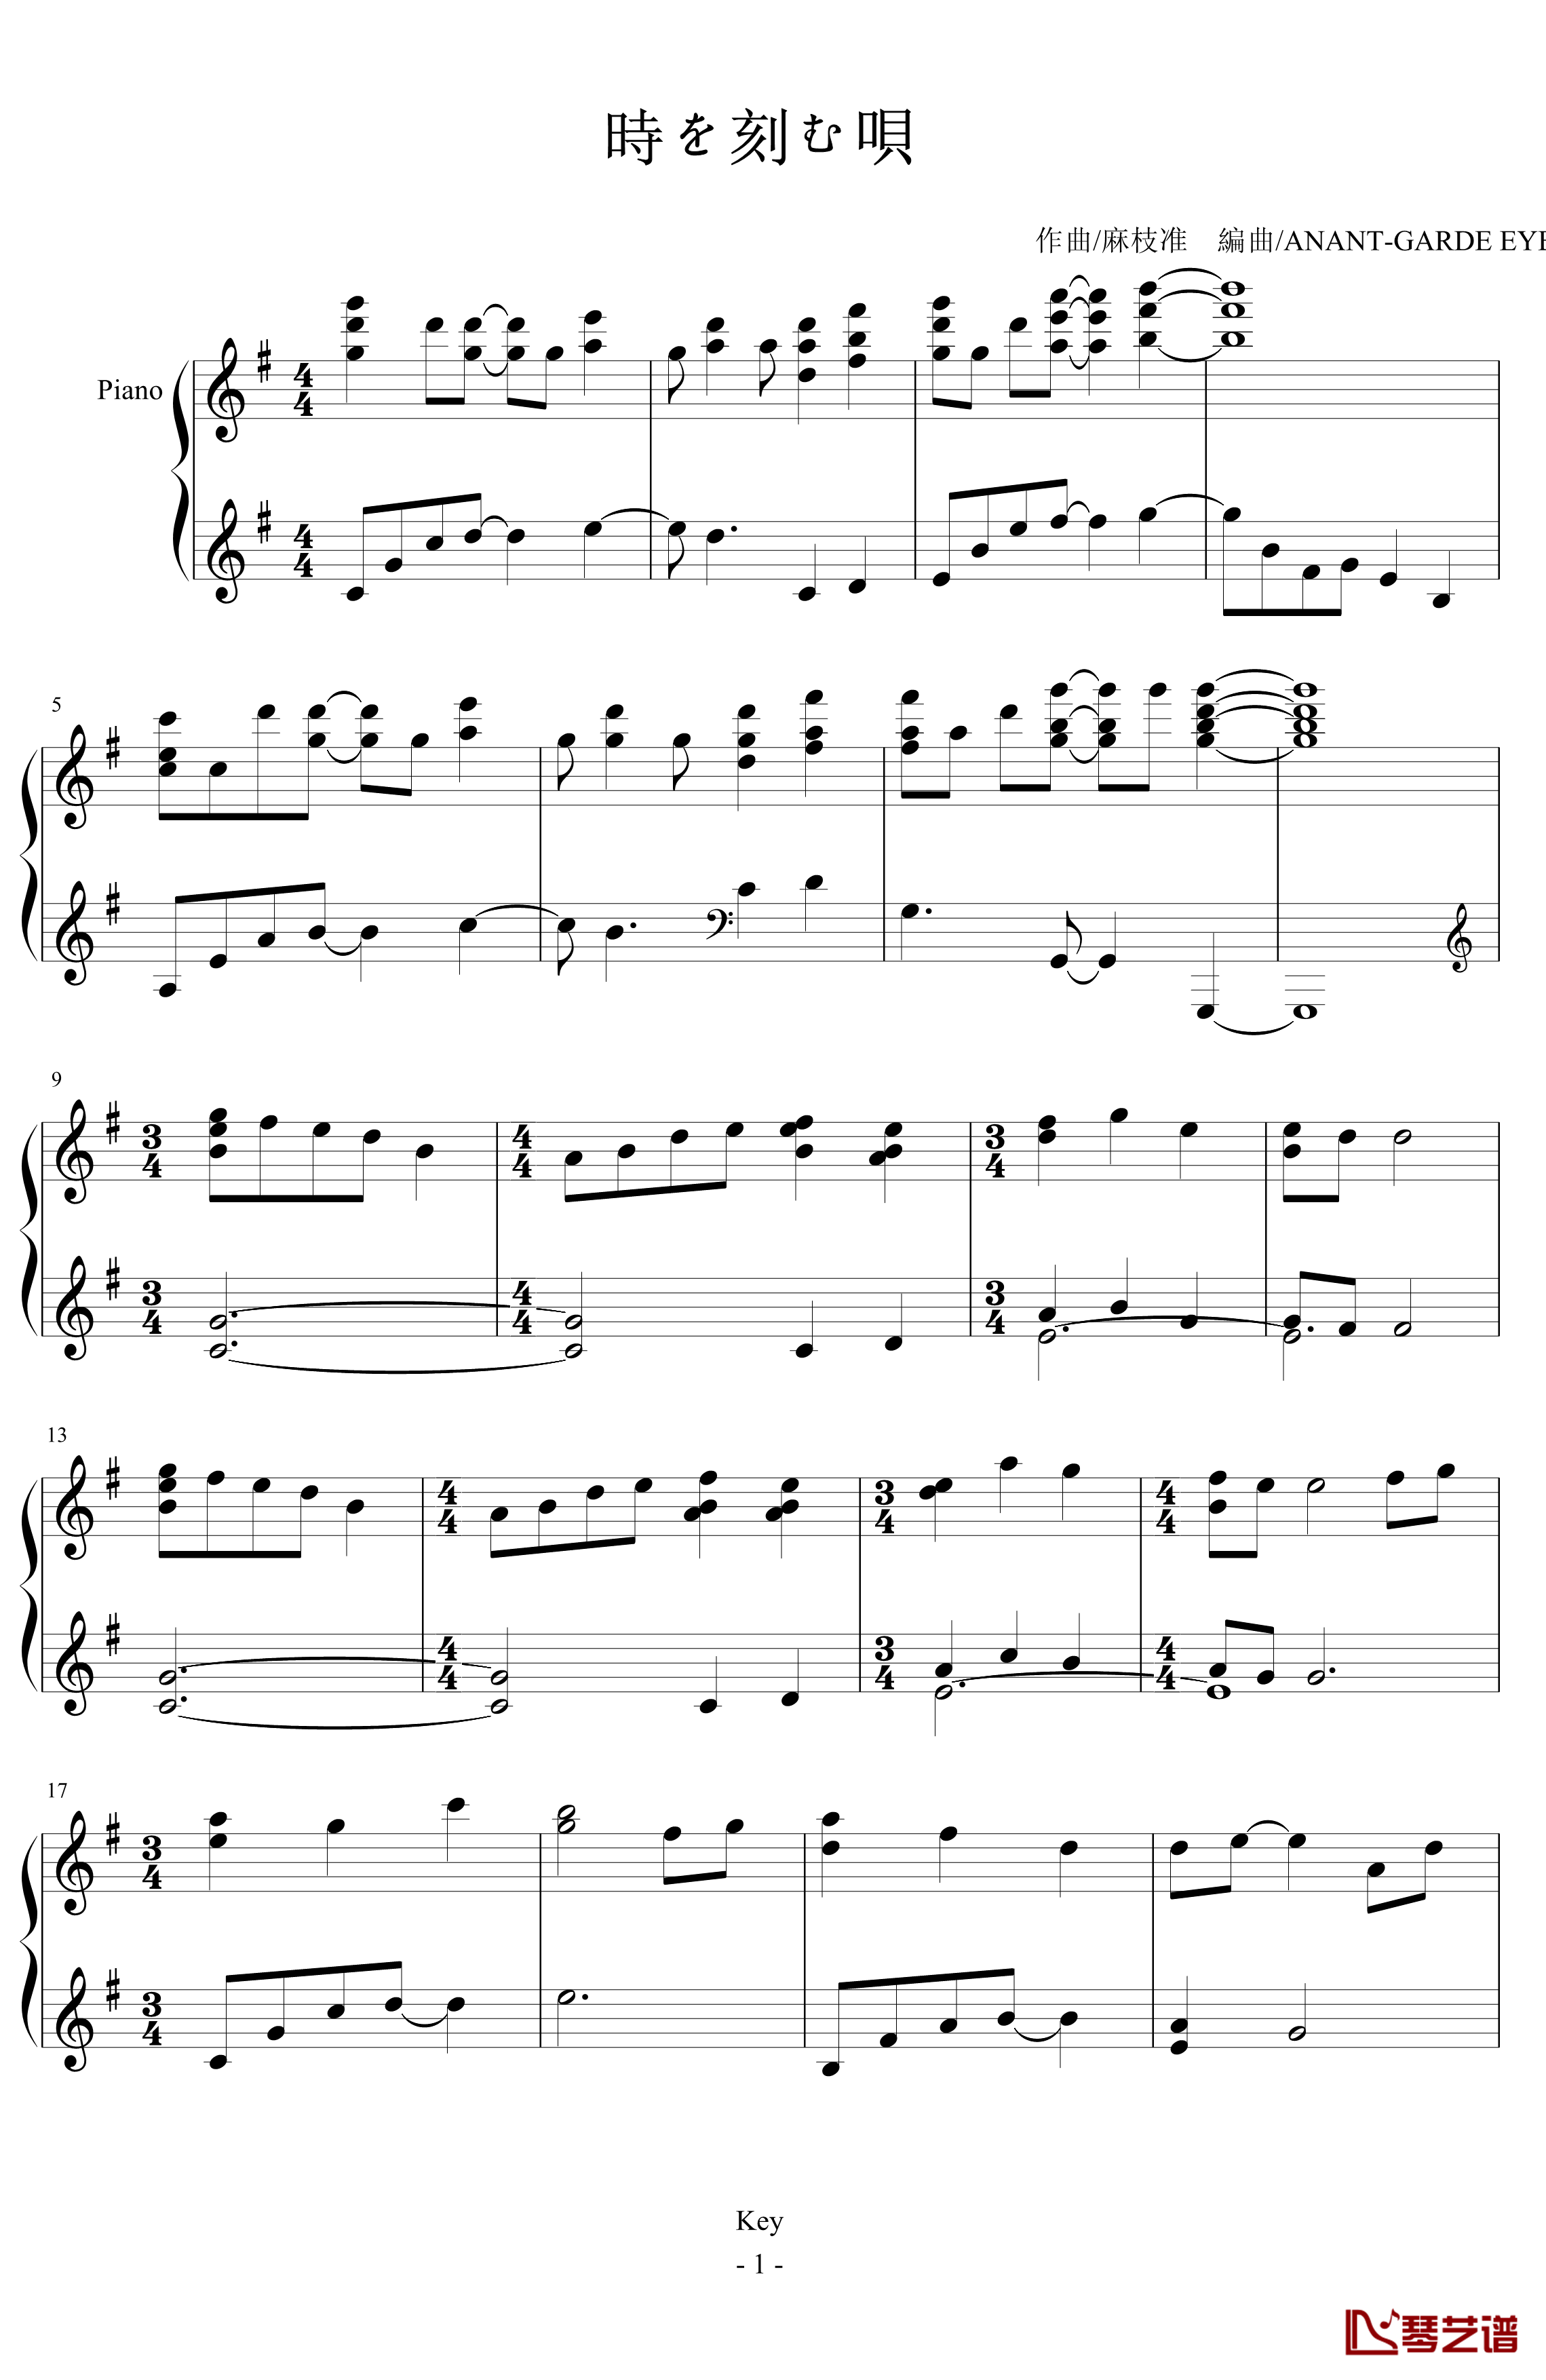 時を刻む唄钢琴谱-麻枝准-CLANNAD1